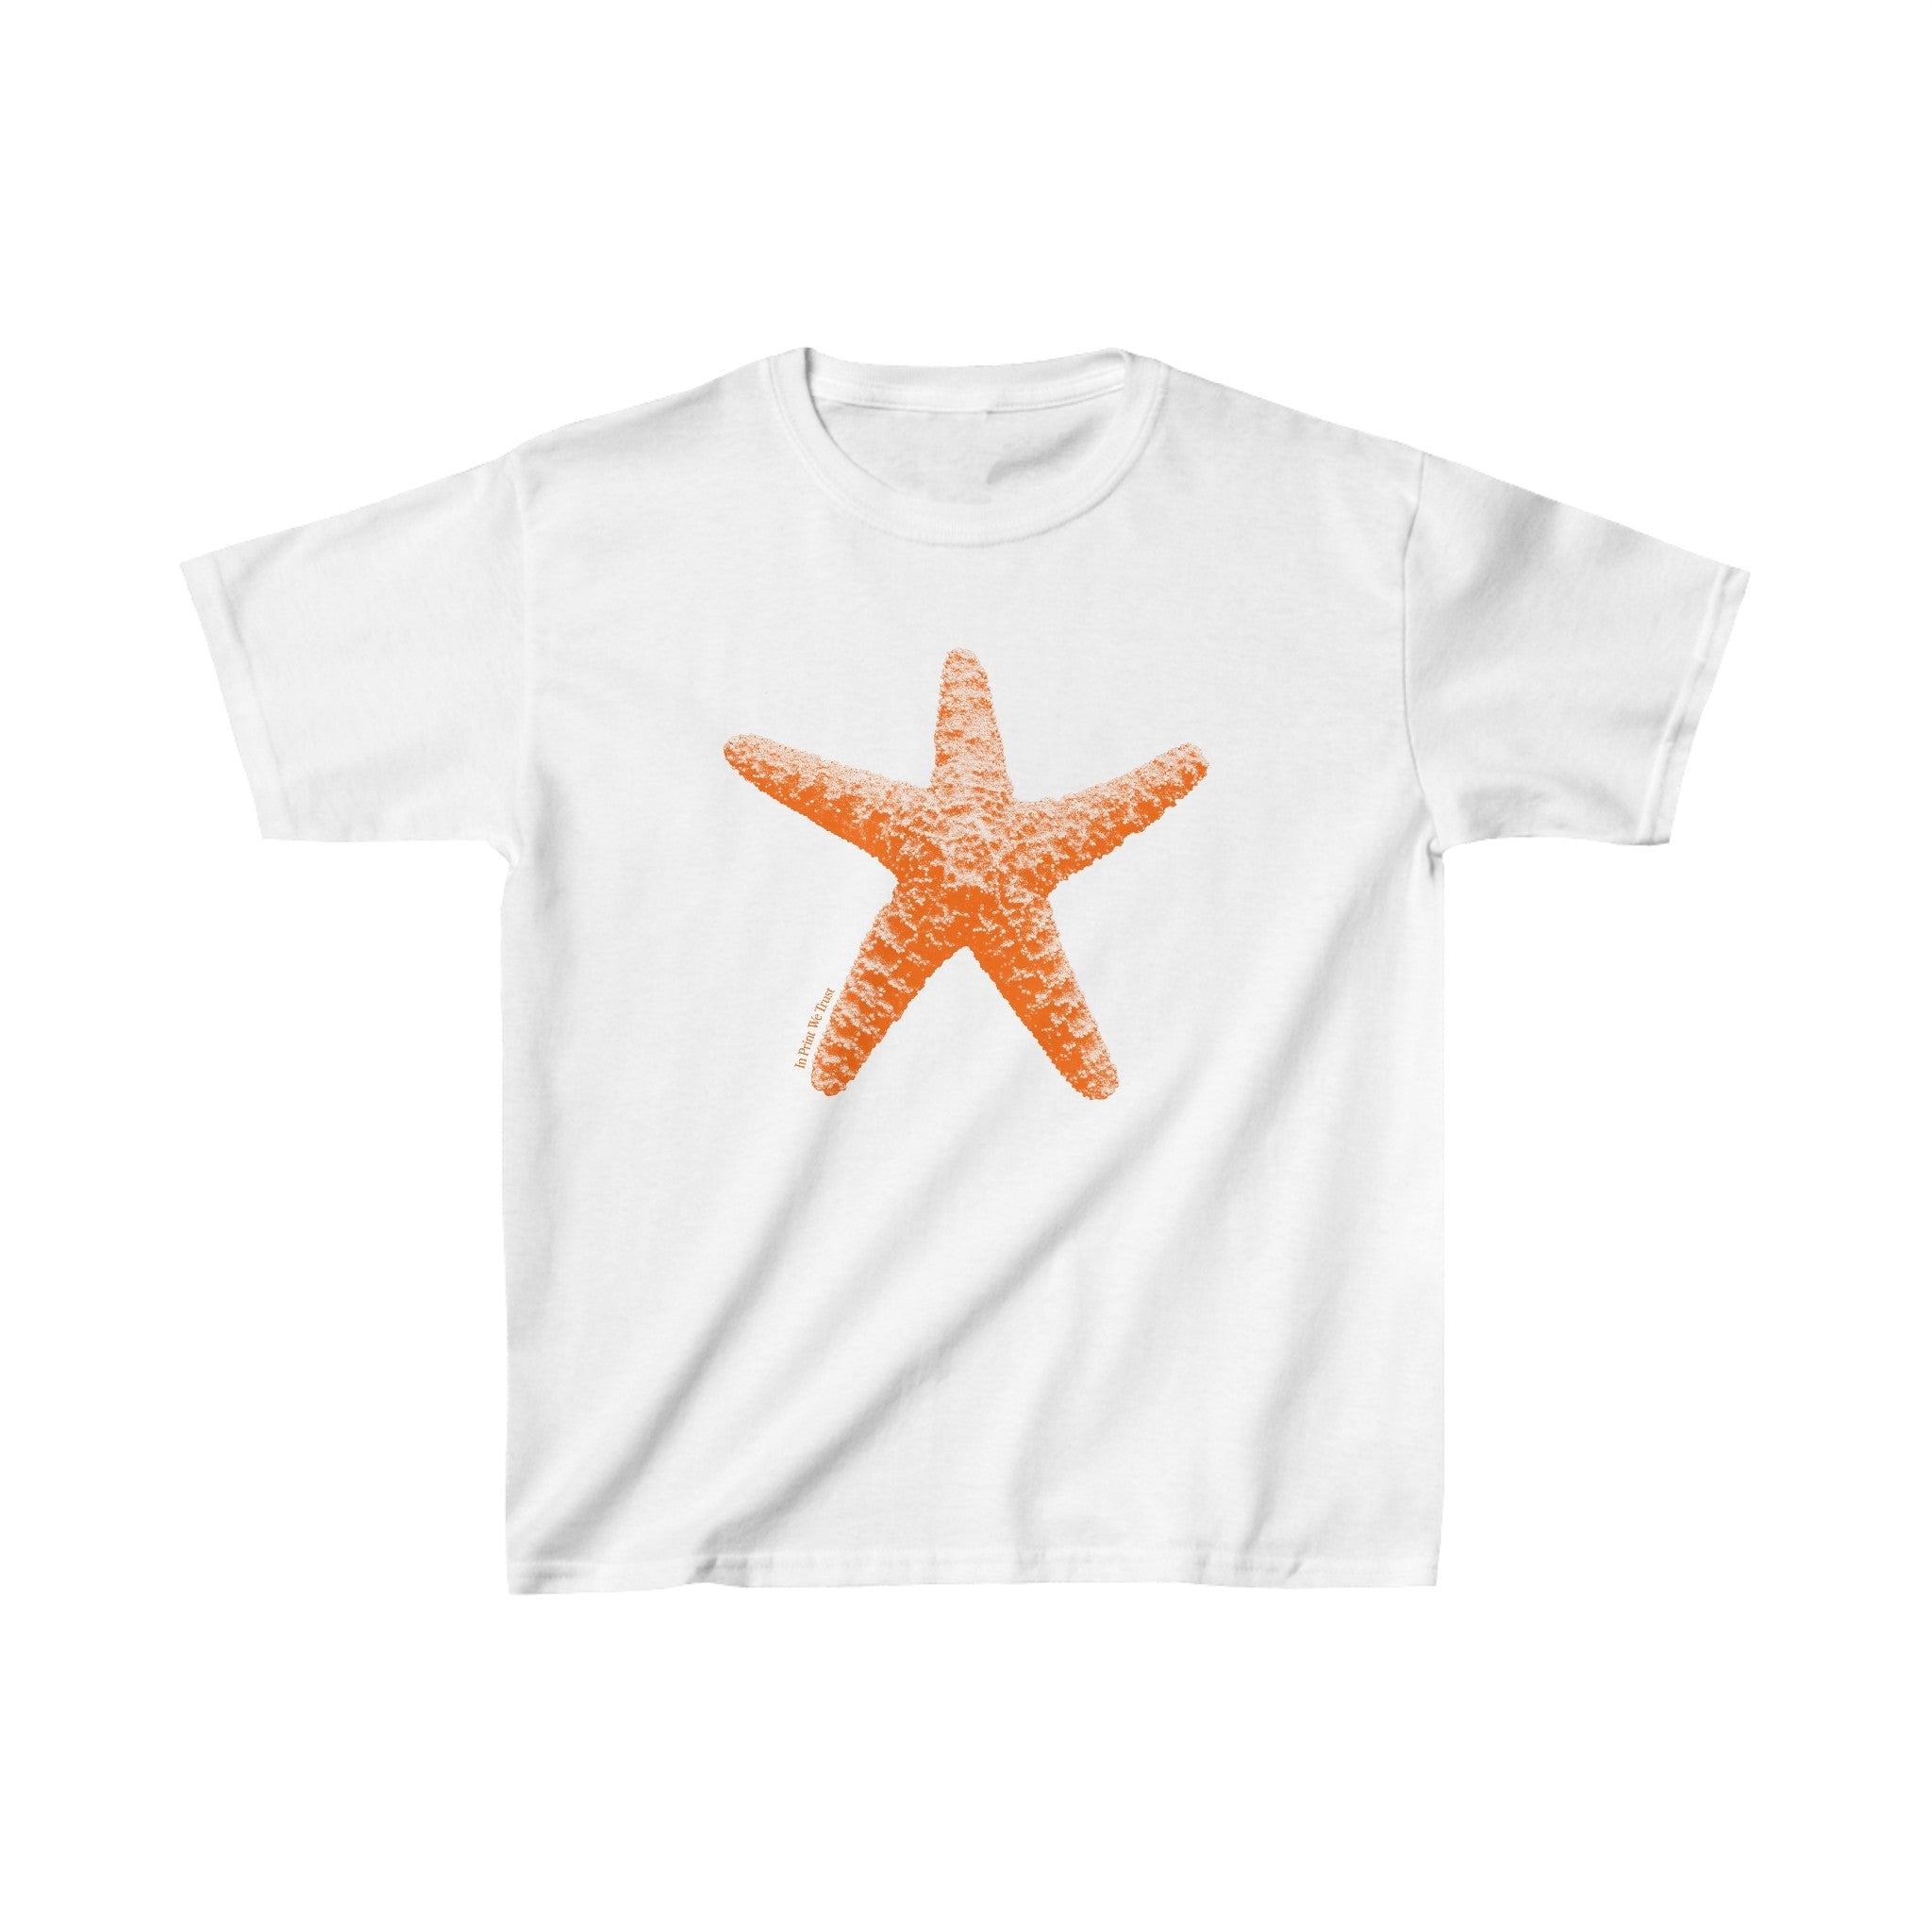 'Starfish' baby tee - In Print We Trust